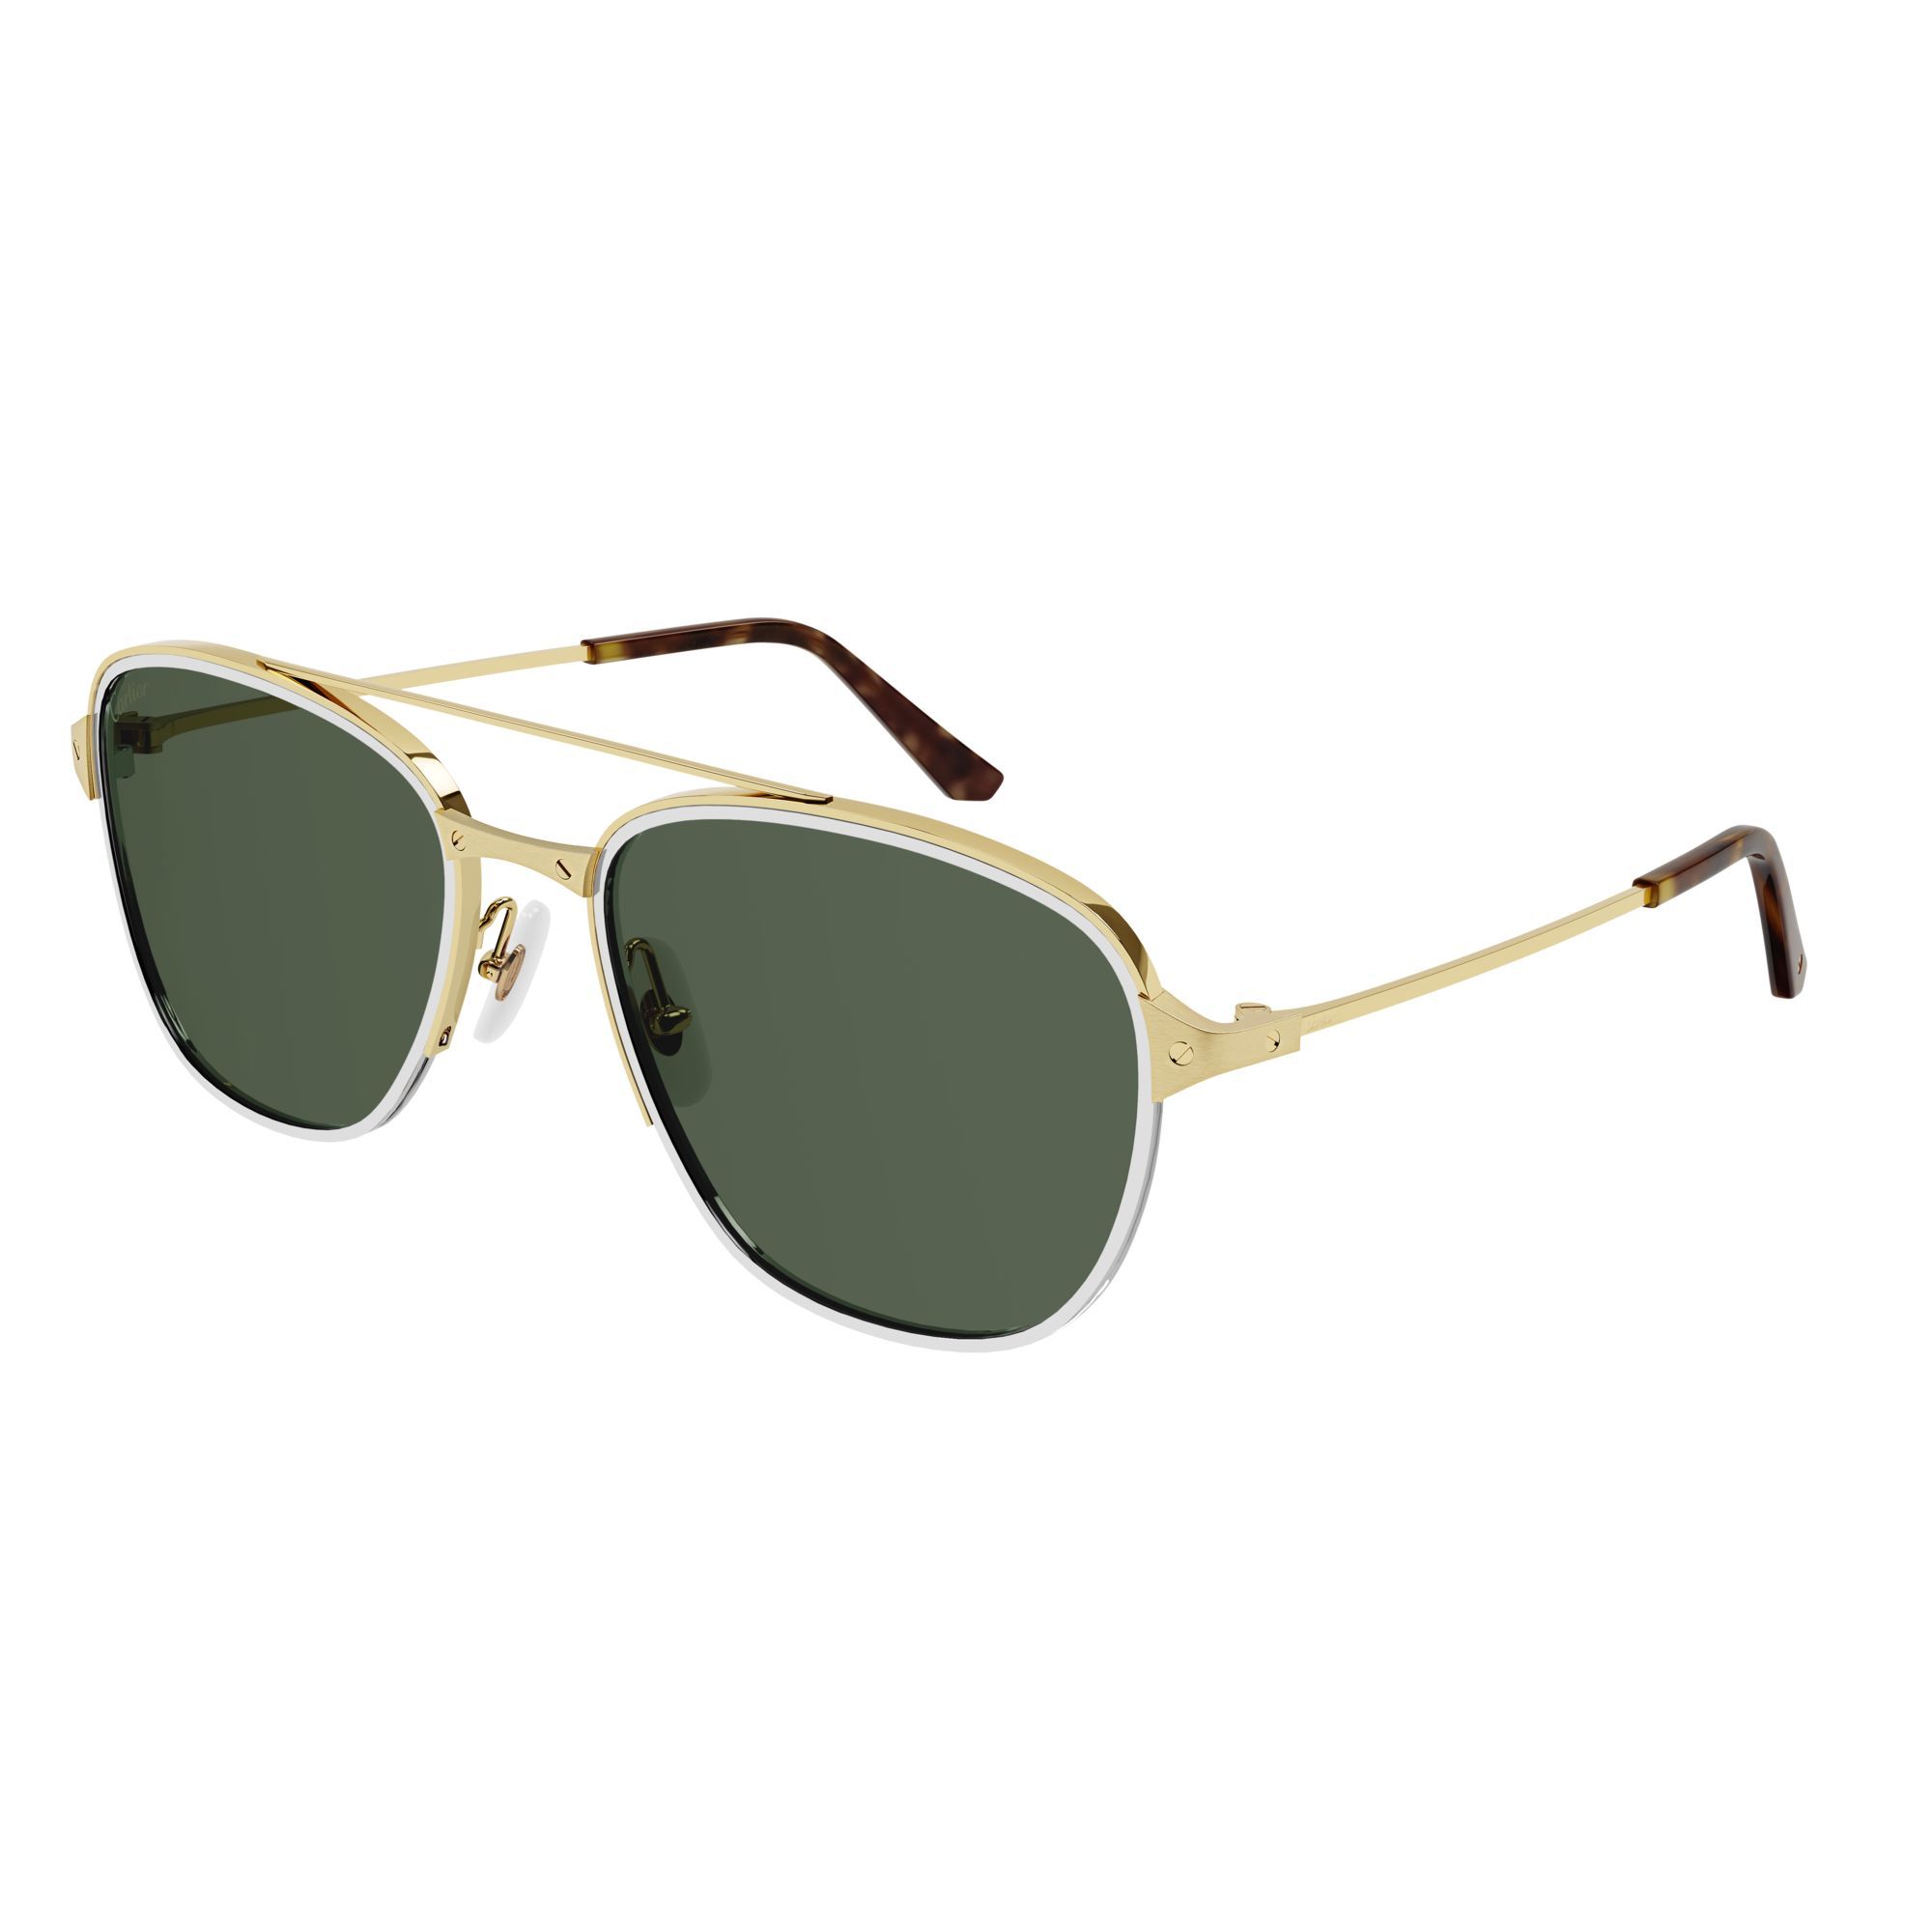 CT0326S Square Sunglasses 2 - size 57